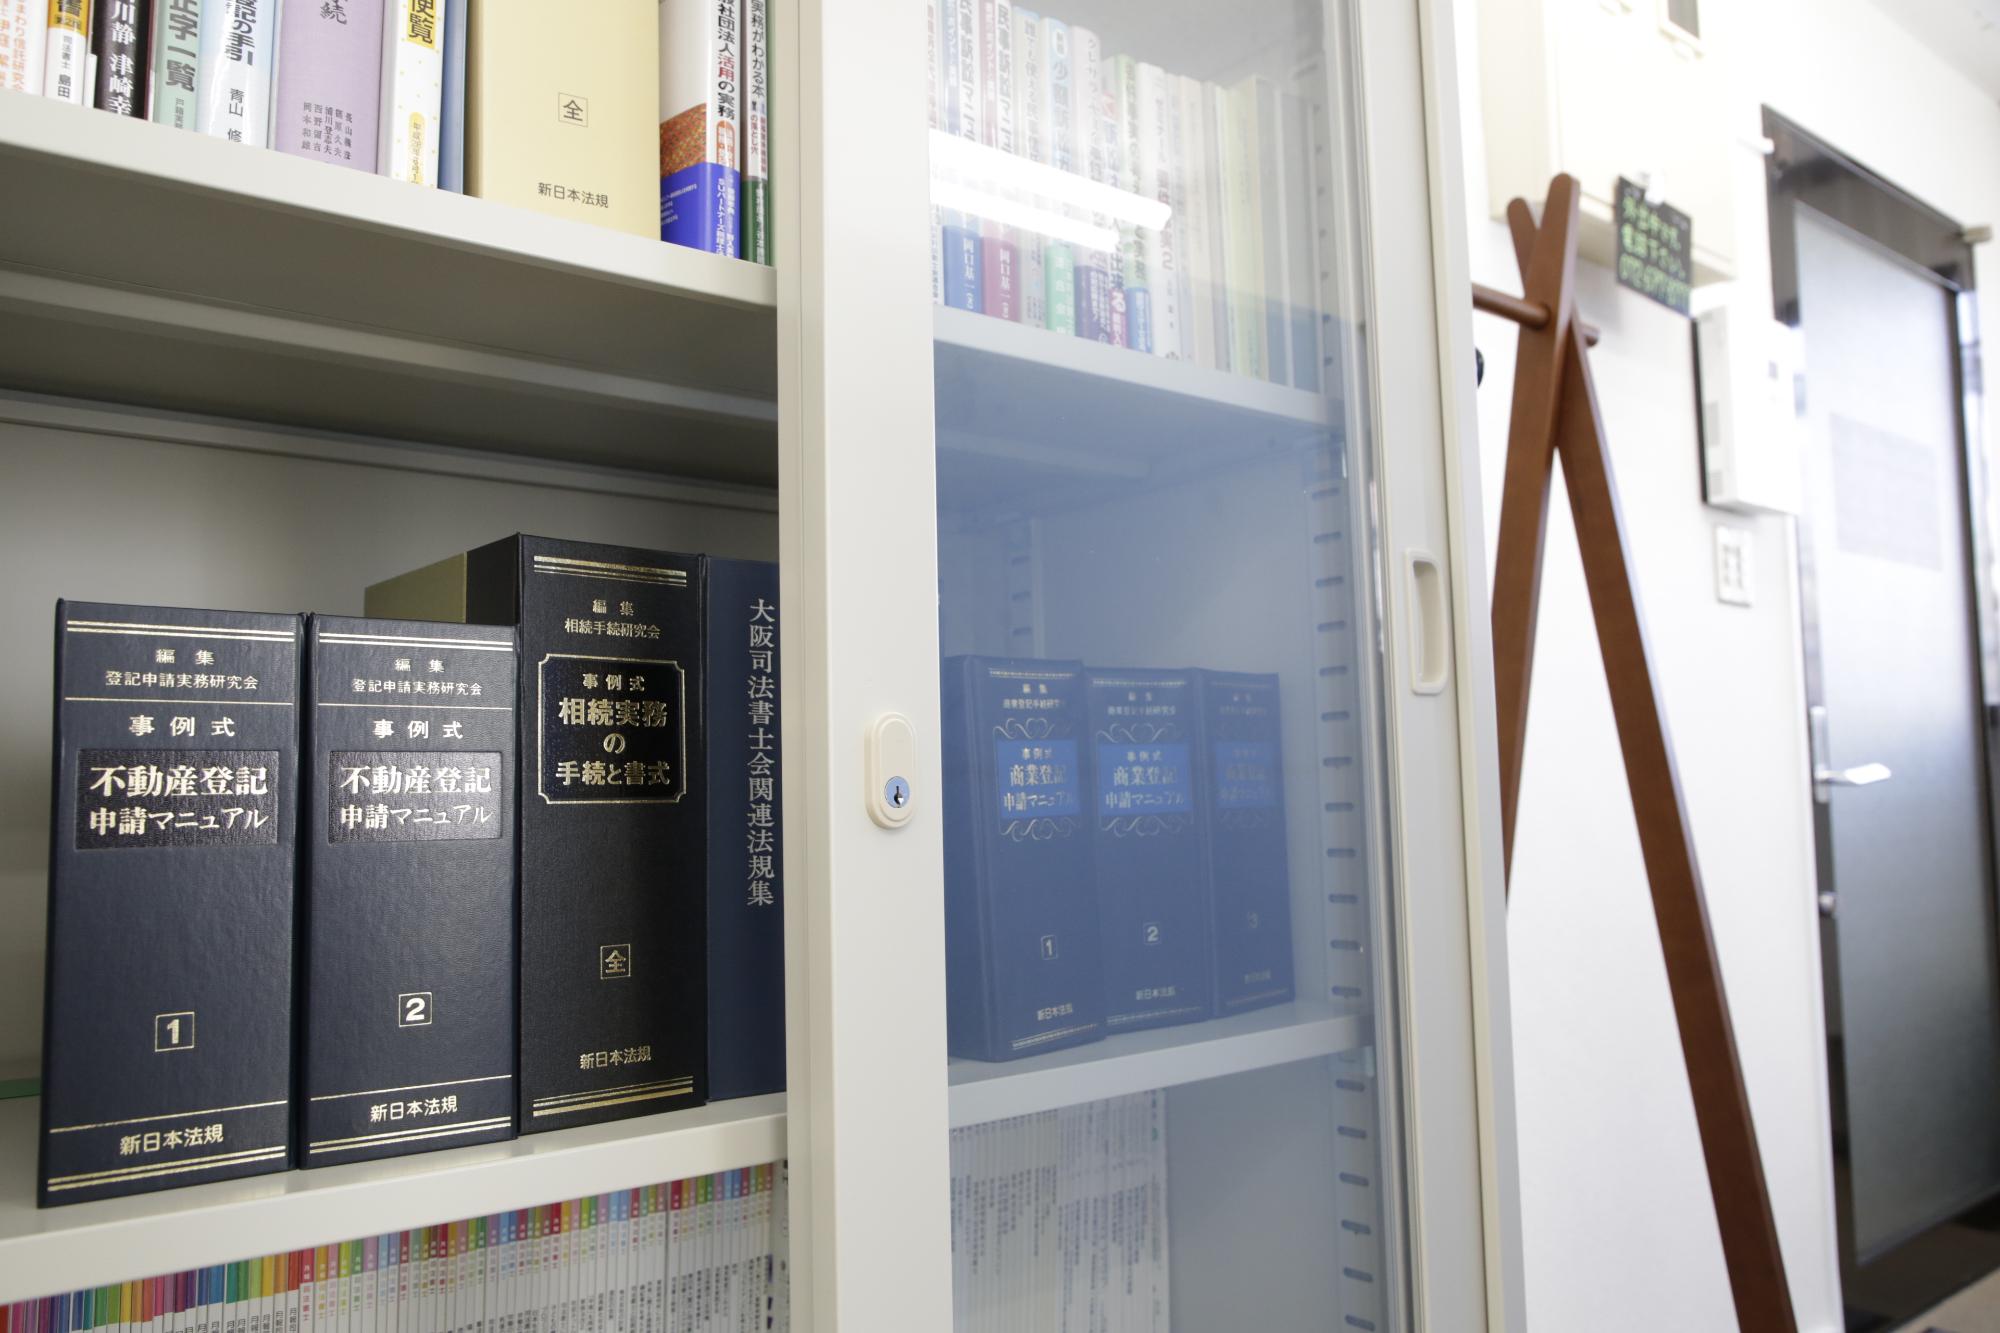 事務所の書庫を写した写真。法律関係の書籍が並んでいる。